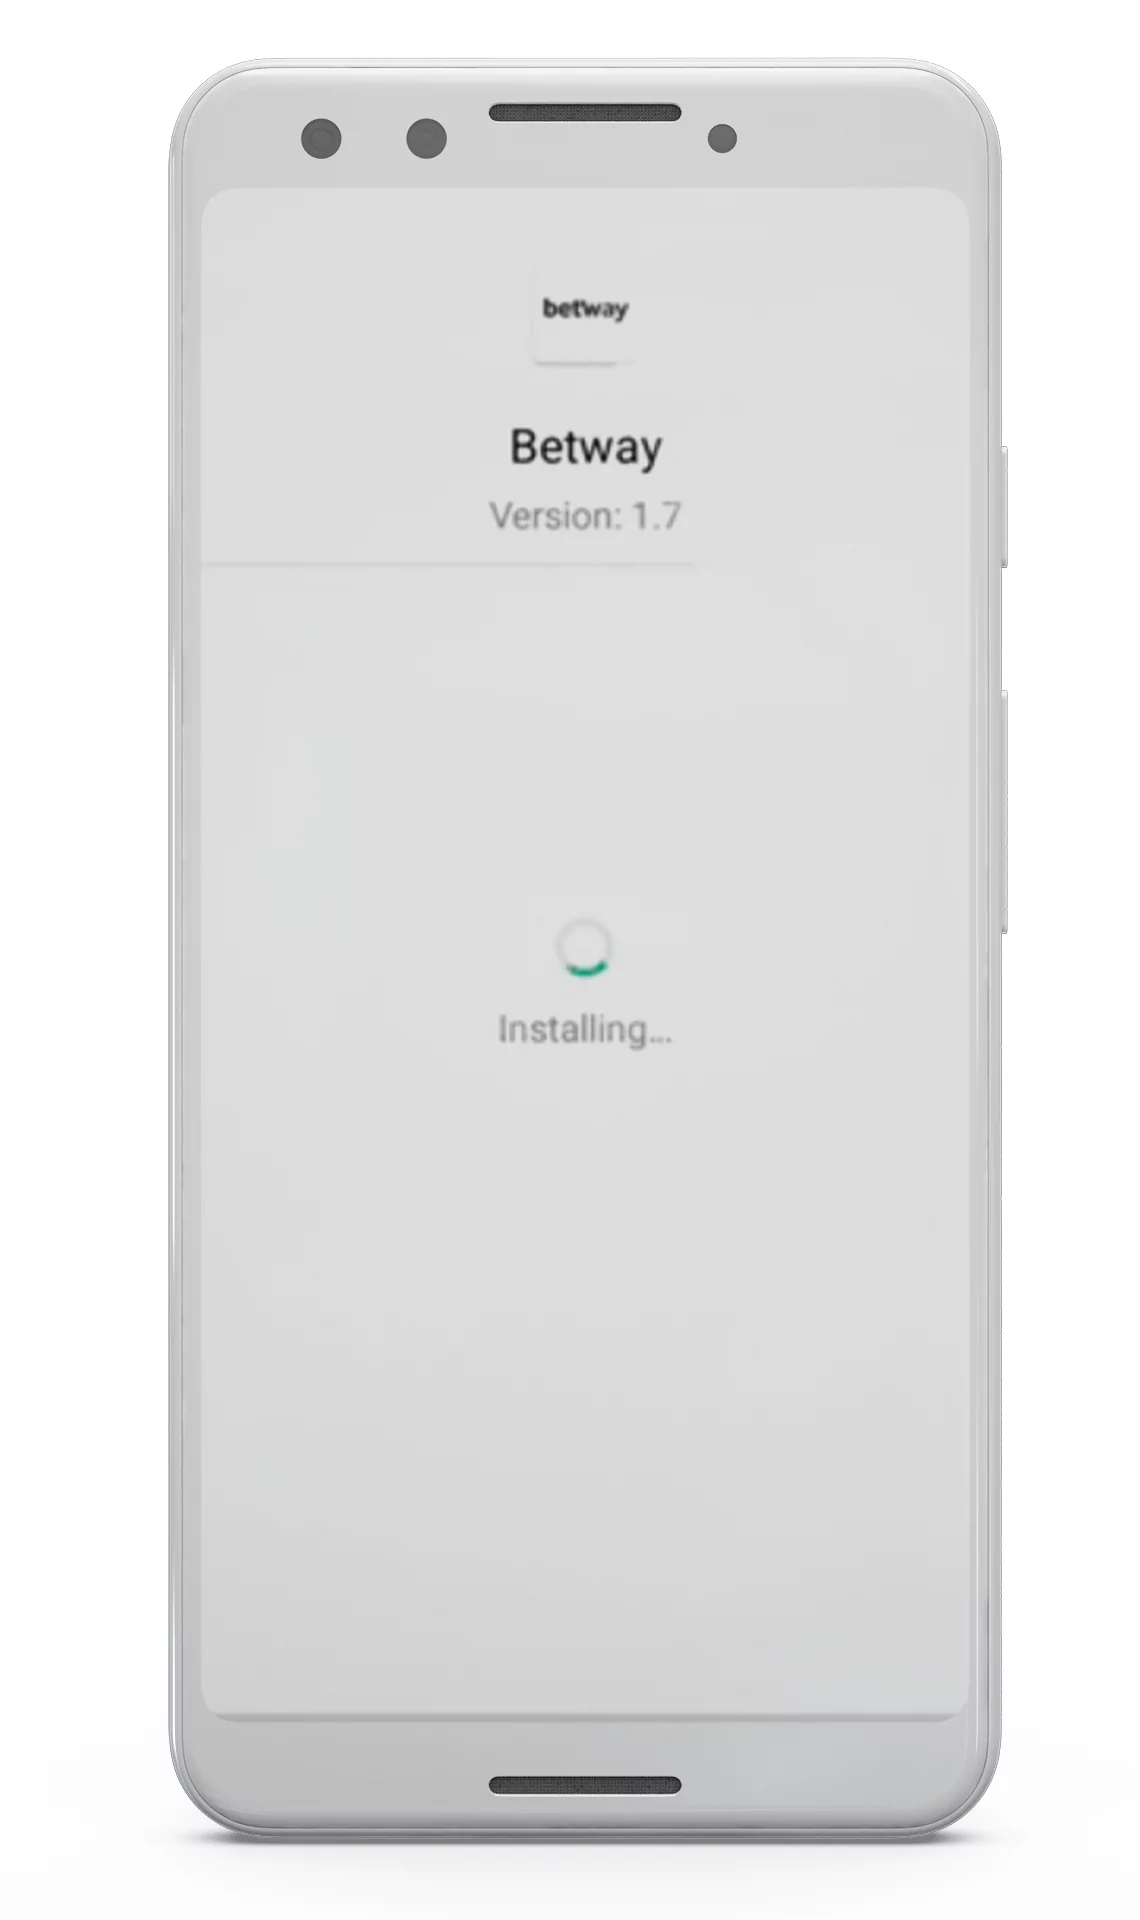 अब आप अपने मोबाइल फोन के जरिए Betway ऐप के लिए साइन अप कर सकते हैं।